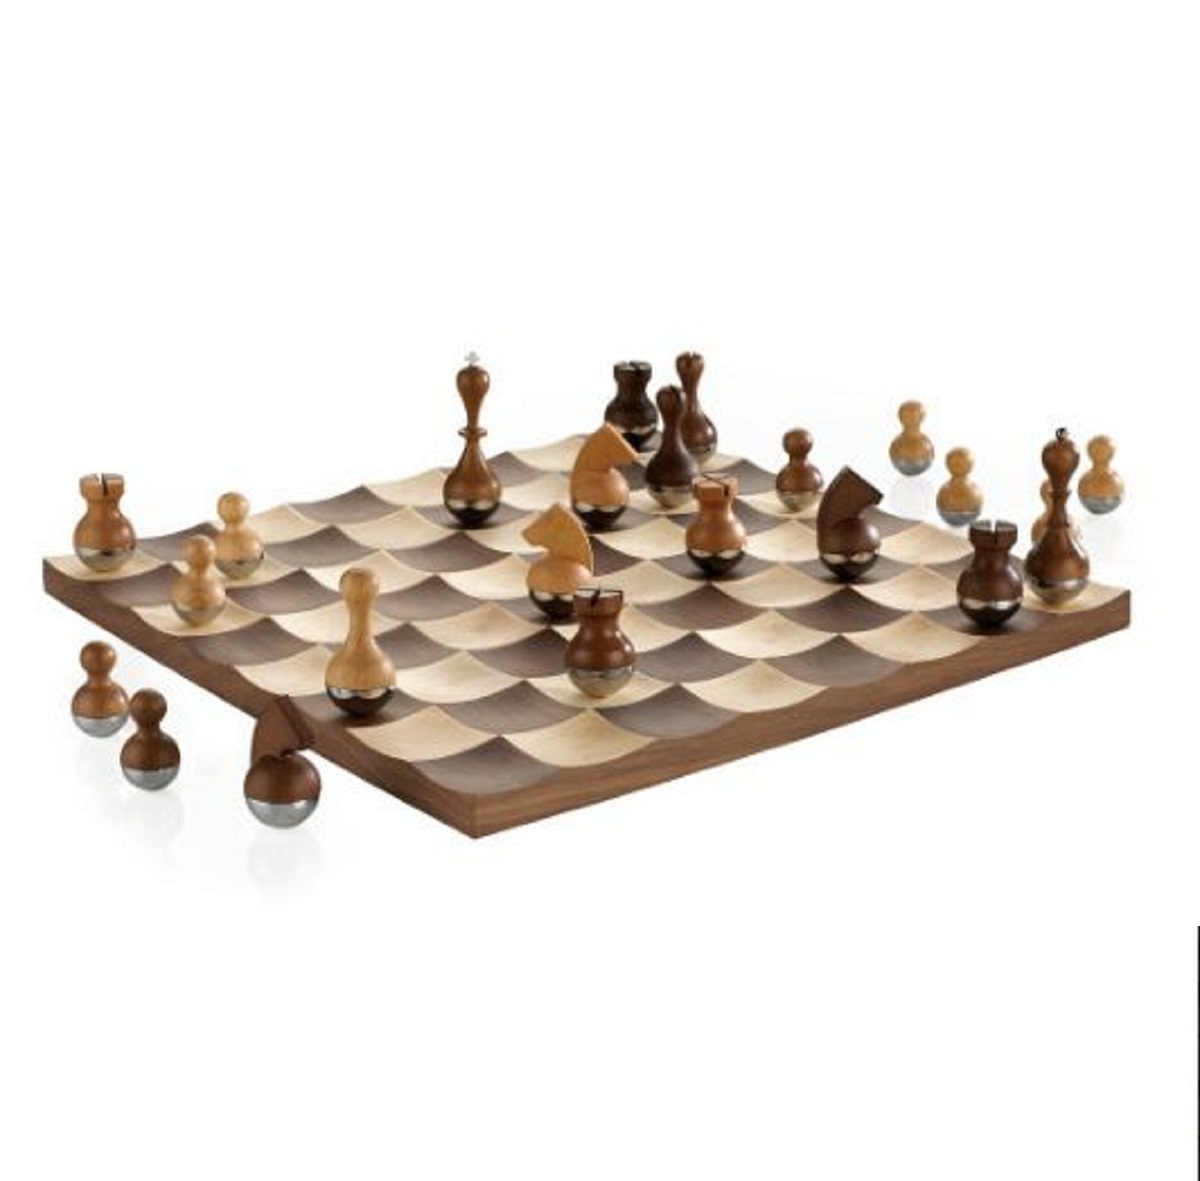 Umbra WOBBLE Schach Set Walnuss hier bestellen im aoshop.de online kaufen